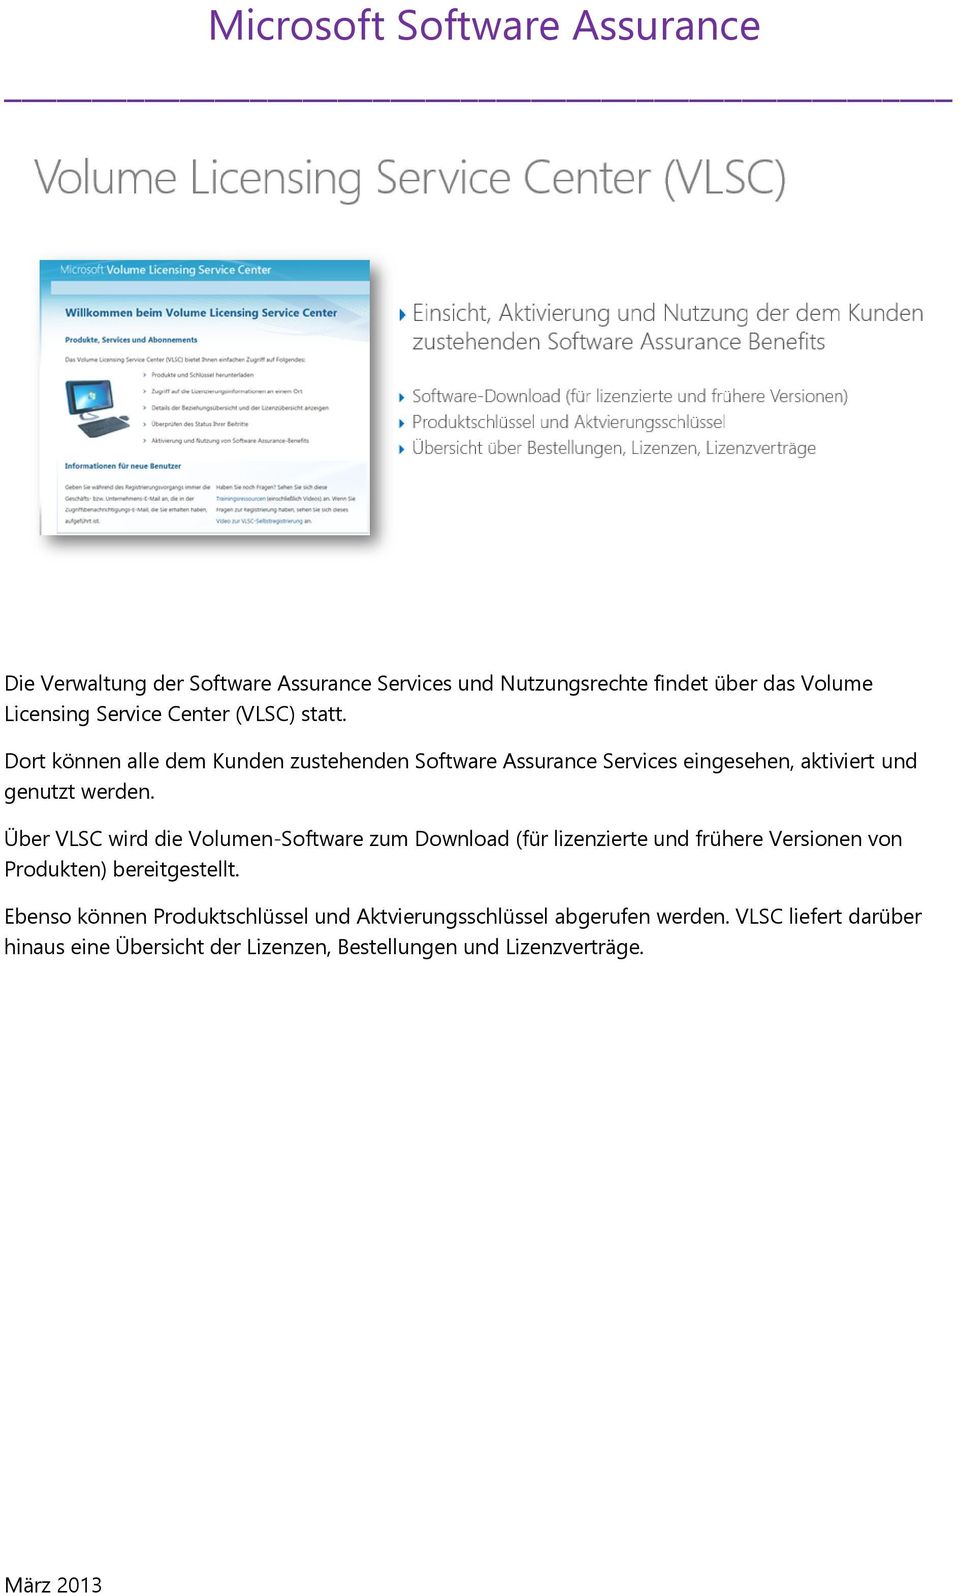 Über VLSC wird die Volumen-Software zum Download (für lizenzierte und frühere Versionen von Produkten) bereitgestellt.